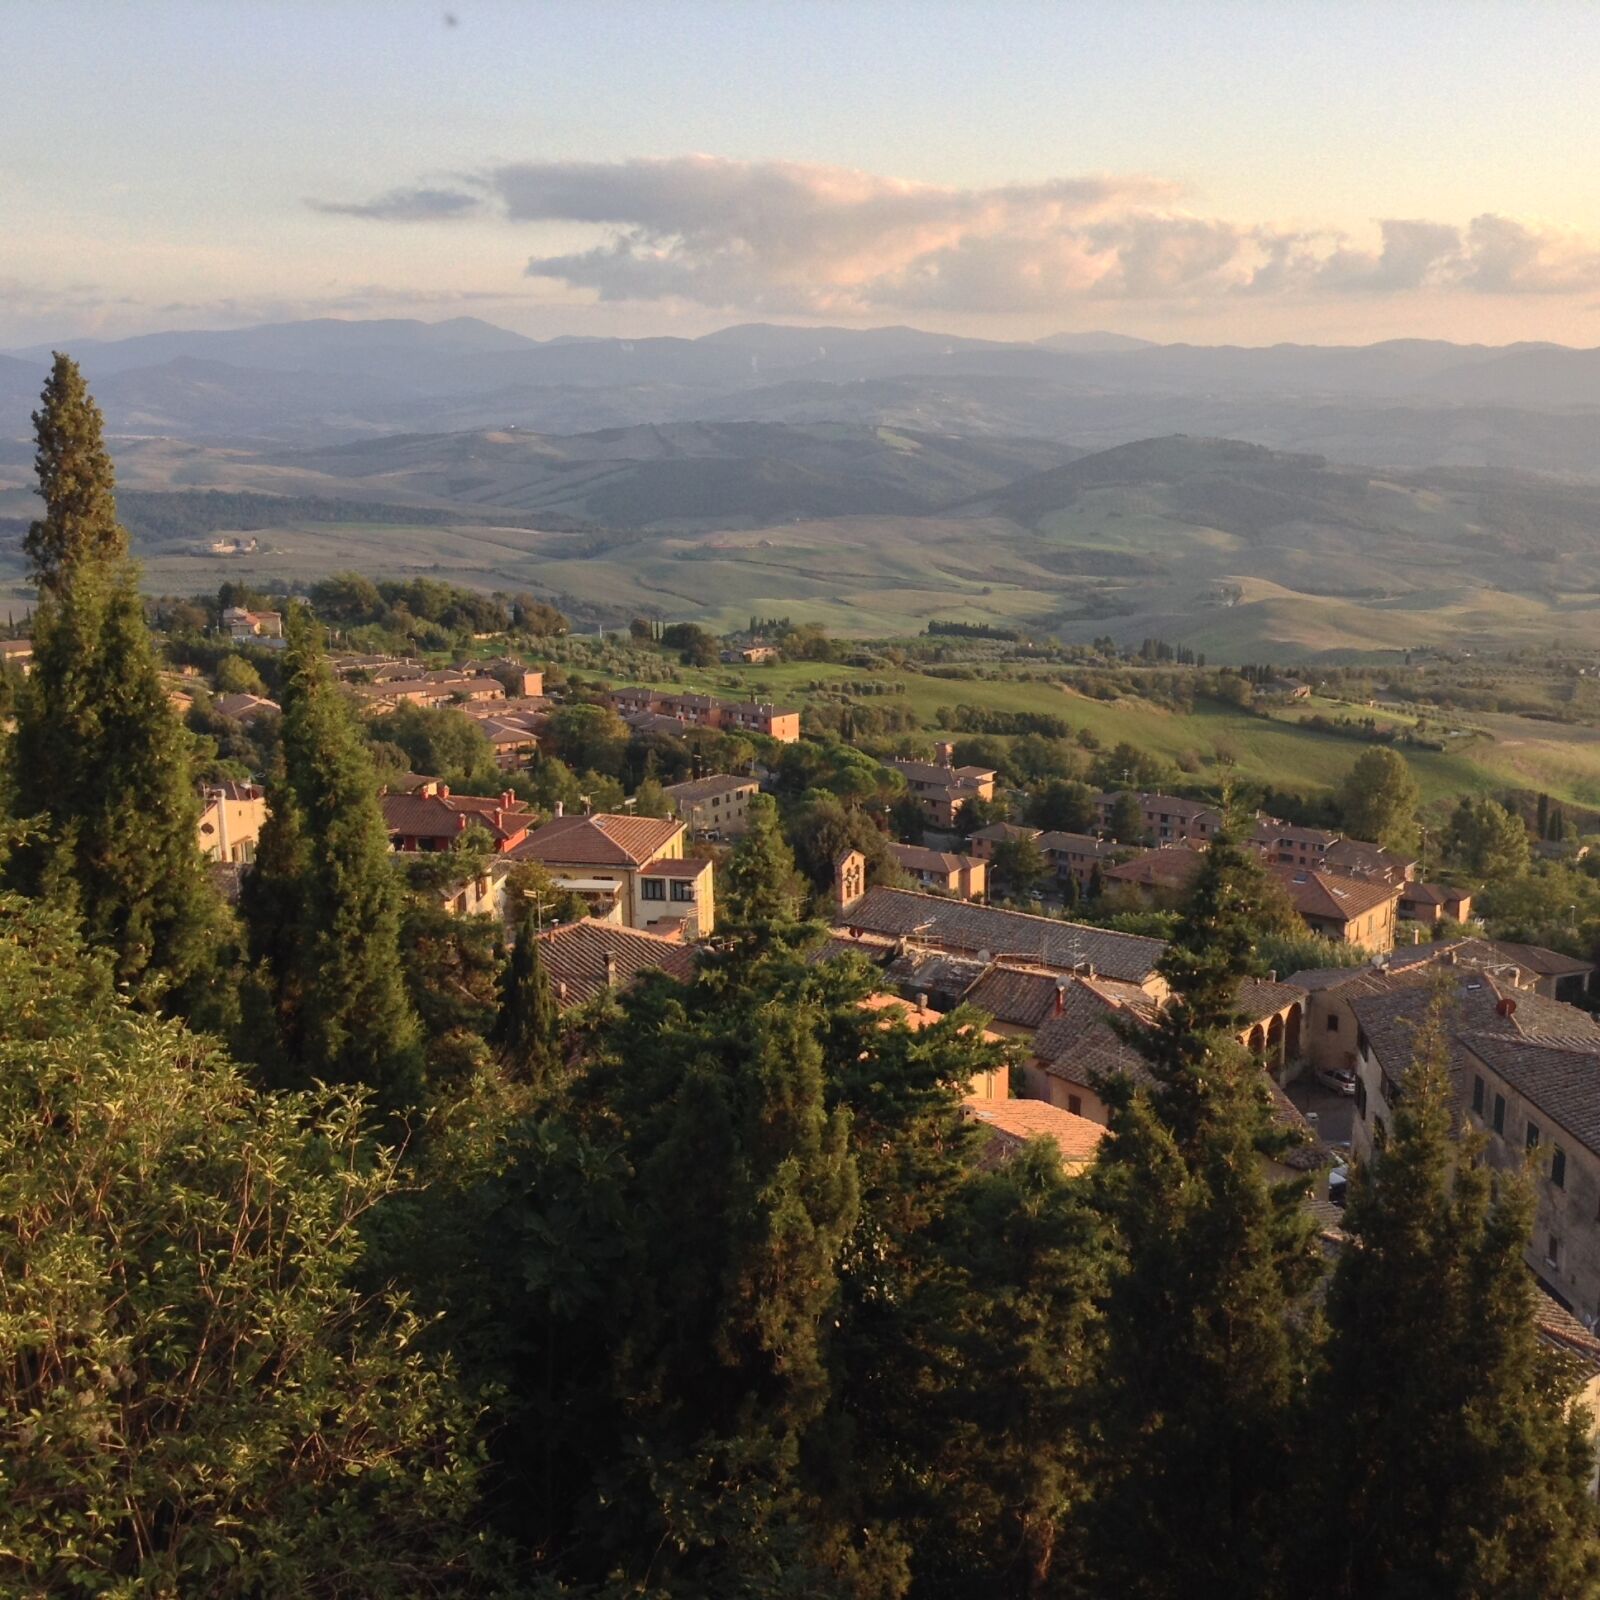 iPad mini back camera 3.3mm f/2.4 sample photo. Tuscany, italy, village photography